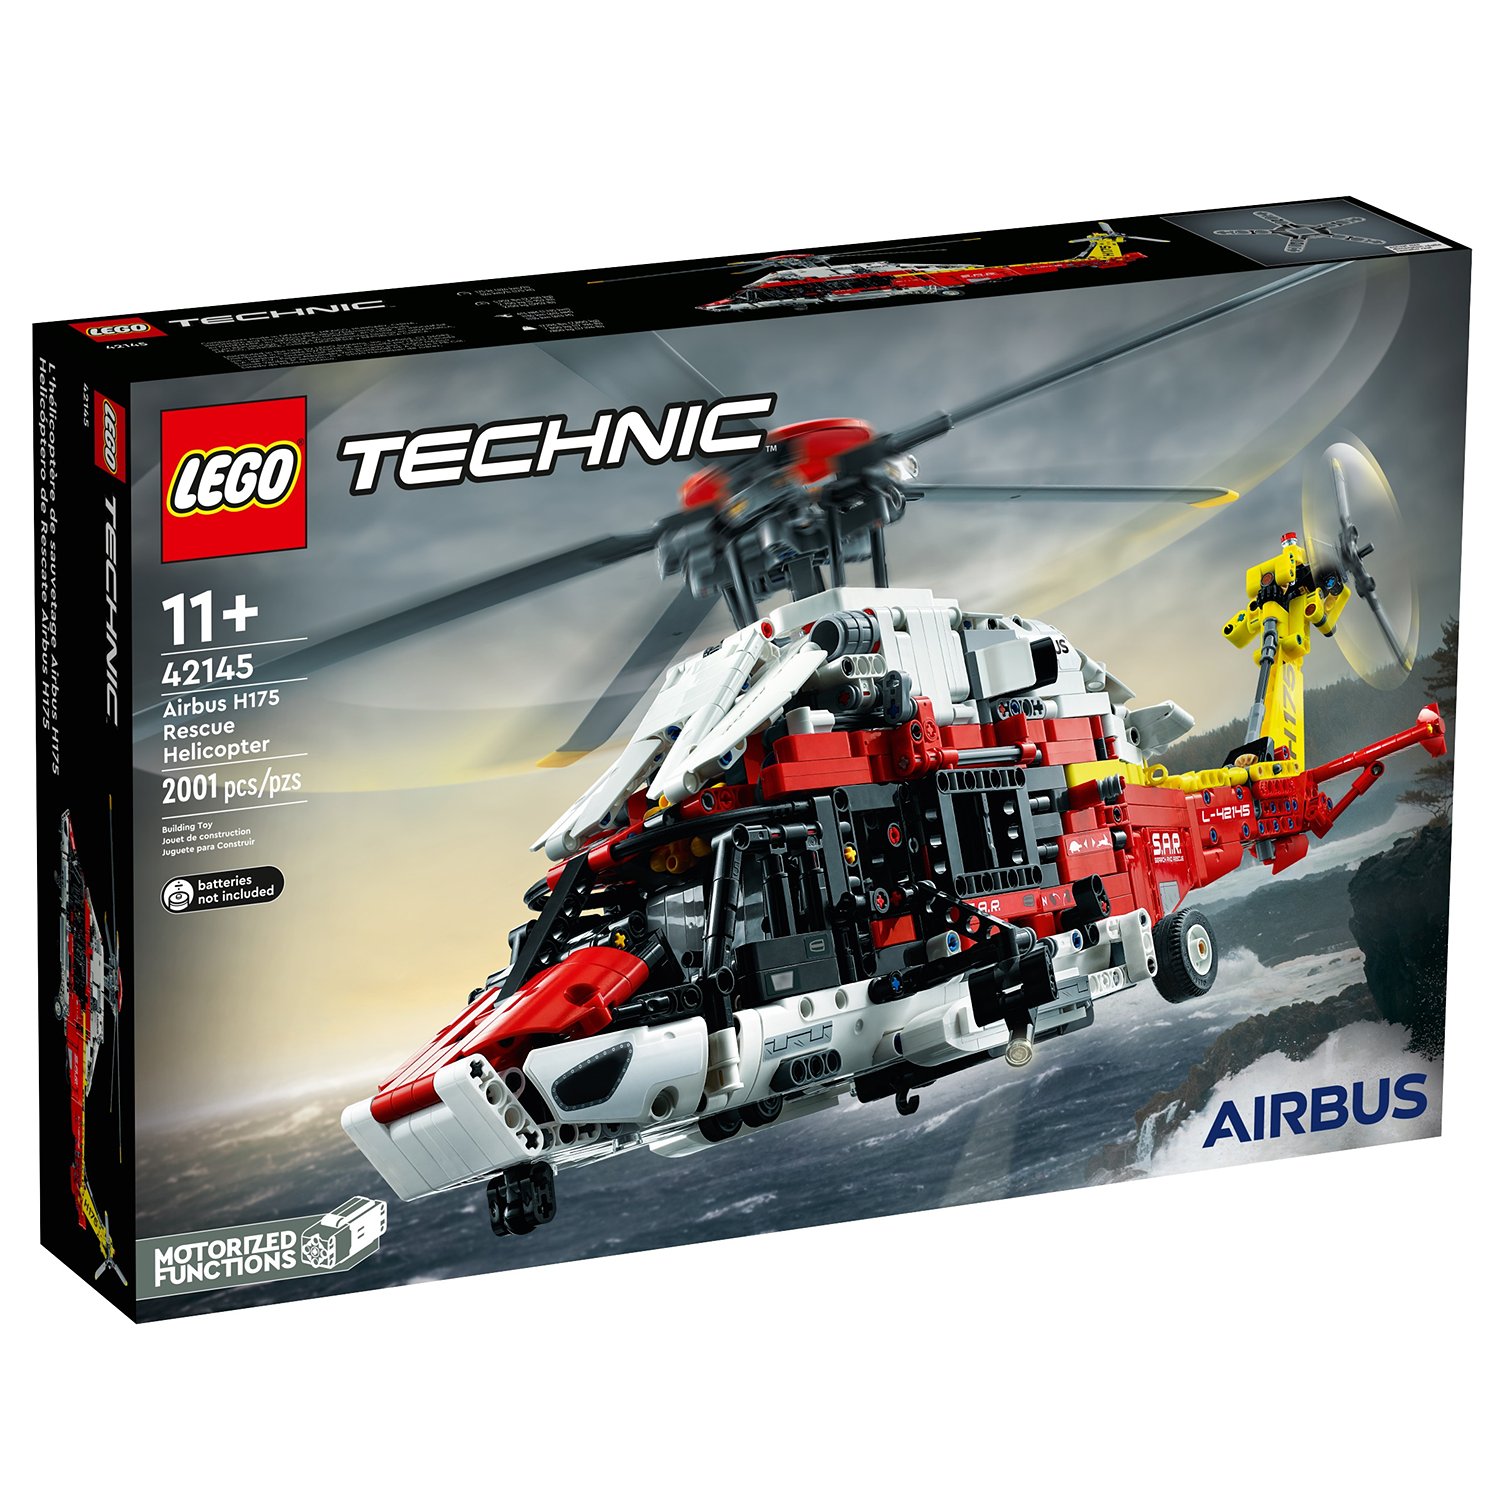 Конструктор LEGO Technic Спасательный вертолет Airbus H175, 2001 деталь, 42145 hti спасательный вертолет teamsterz 25 см